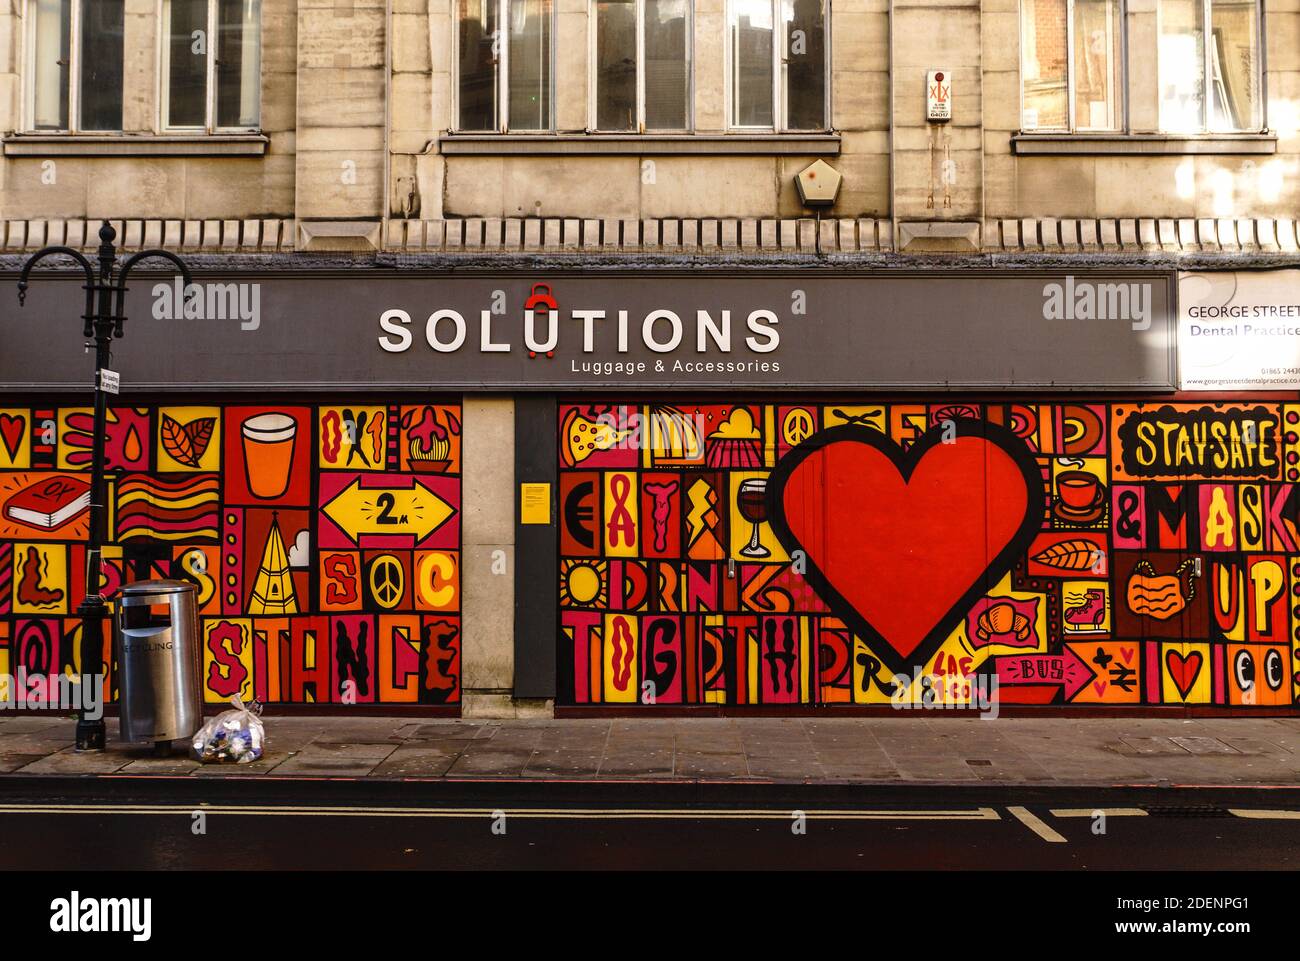 Ein im Stadtzentrum von Oxford in Auftrag gegebenes Wandgemälde des internationalen Künstlers Luke Embden, das an der Außenseite eines geschlossenen Geschäftsgebäudes ausgestellt ist. Stockfoto